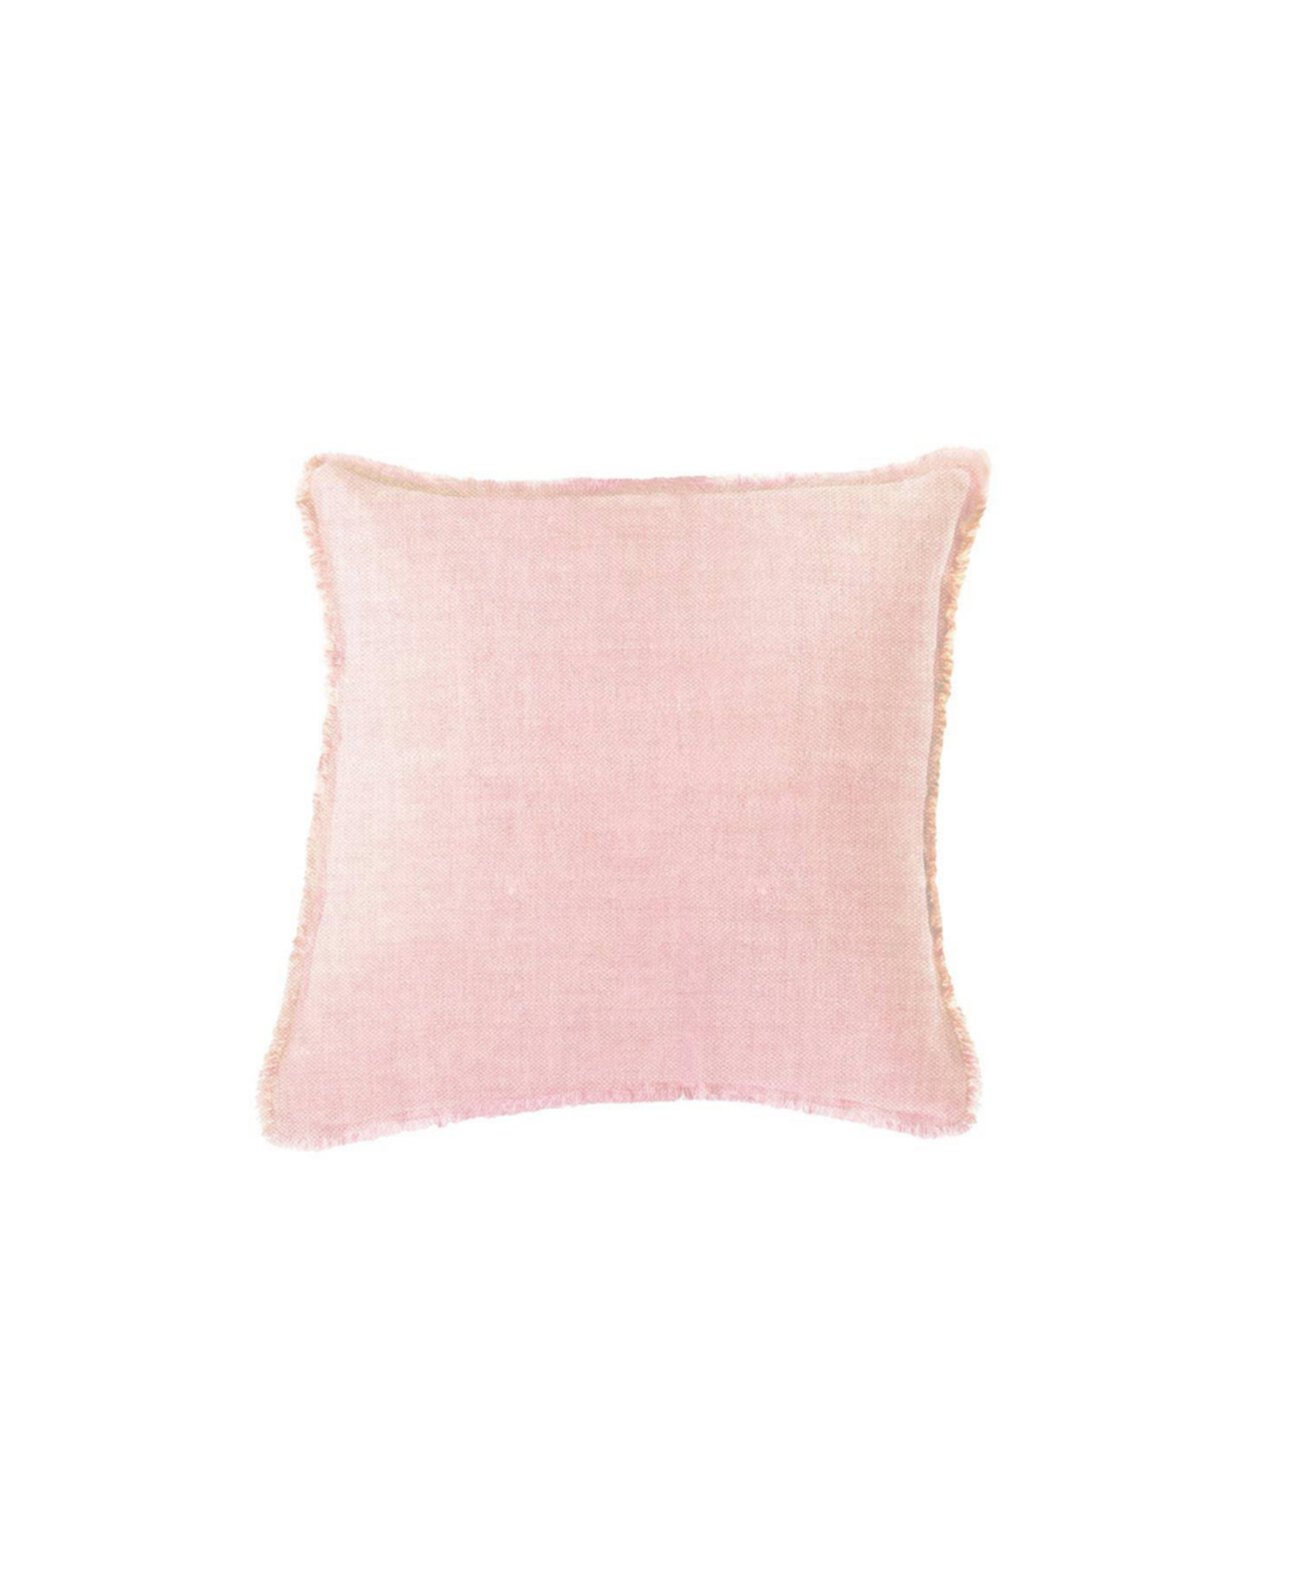 Альтернативная европейская подушка из светло-розового льняного пуха Anaya